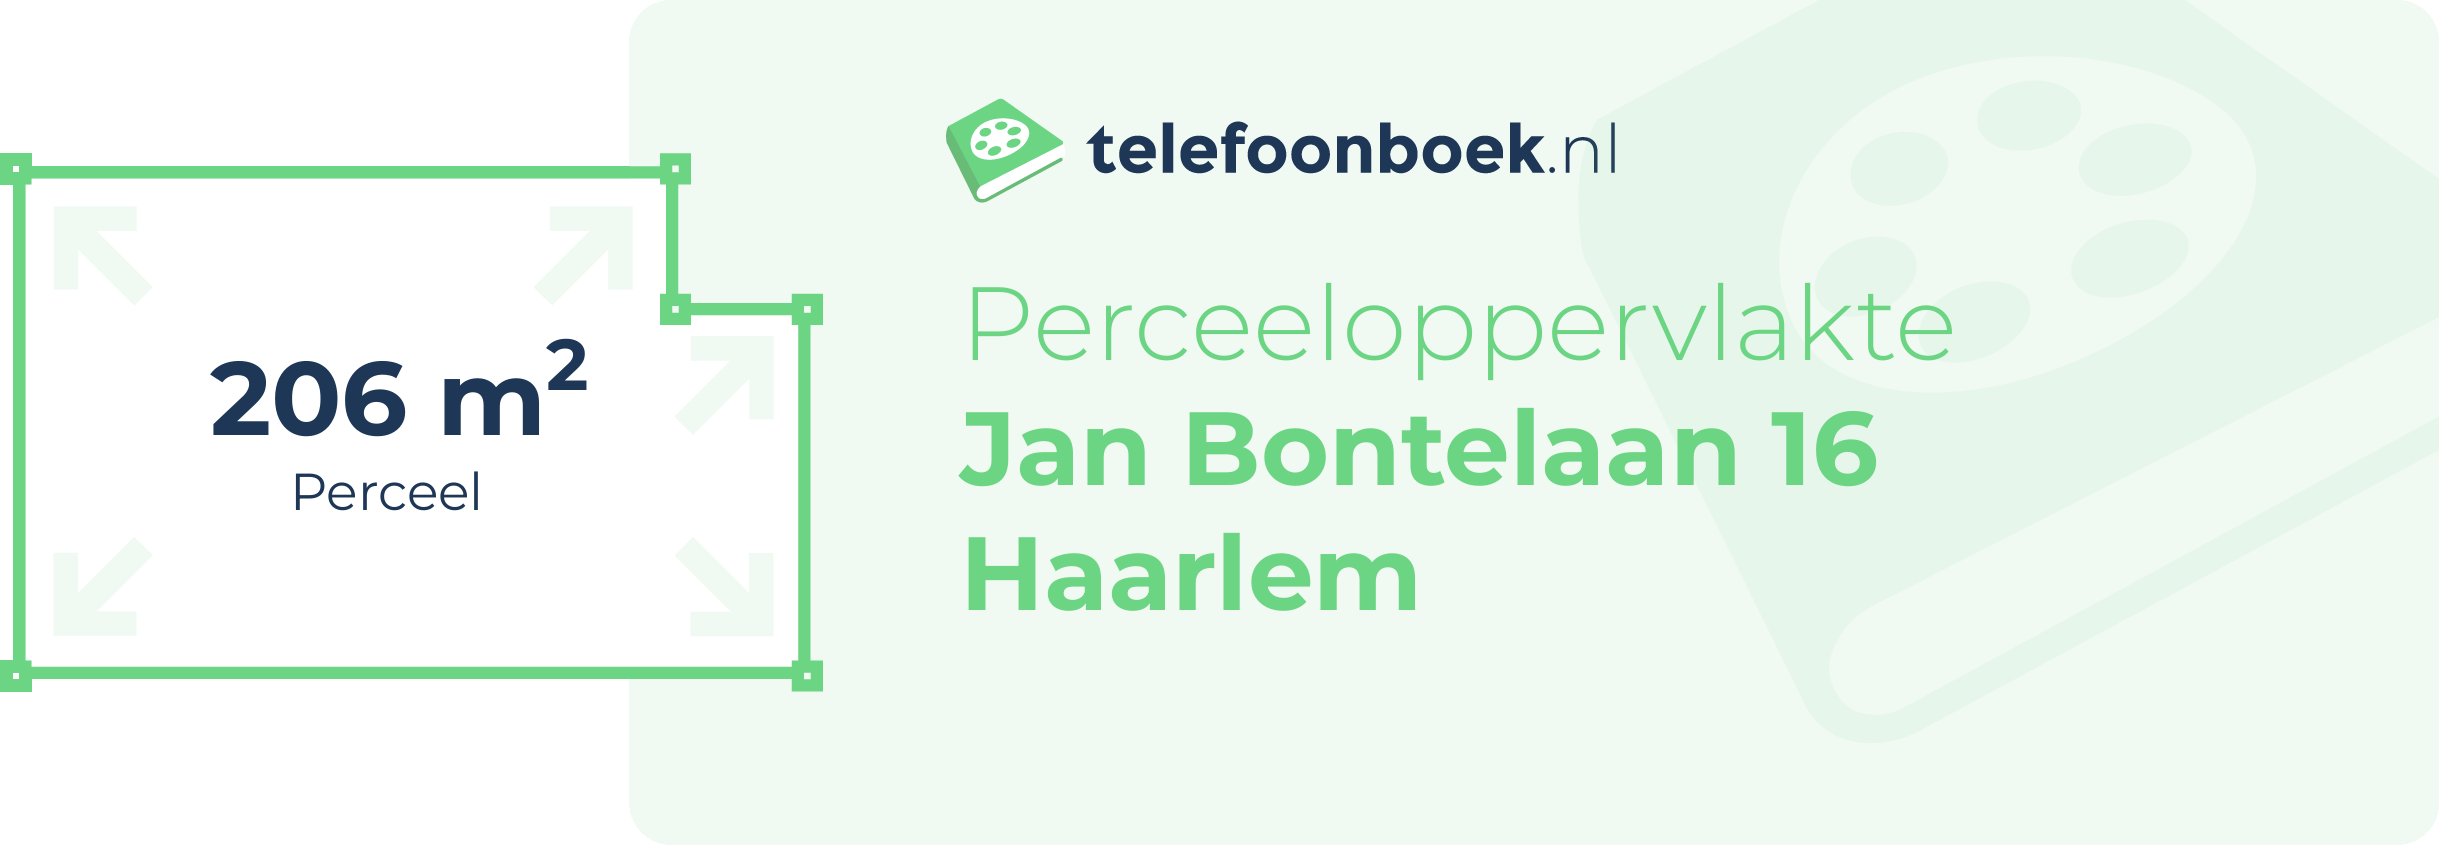 Perceeloppervlakte Jan Bontelaan 16 Haarlem